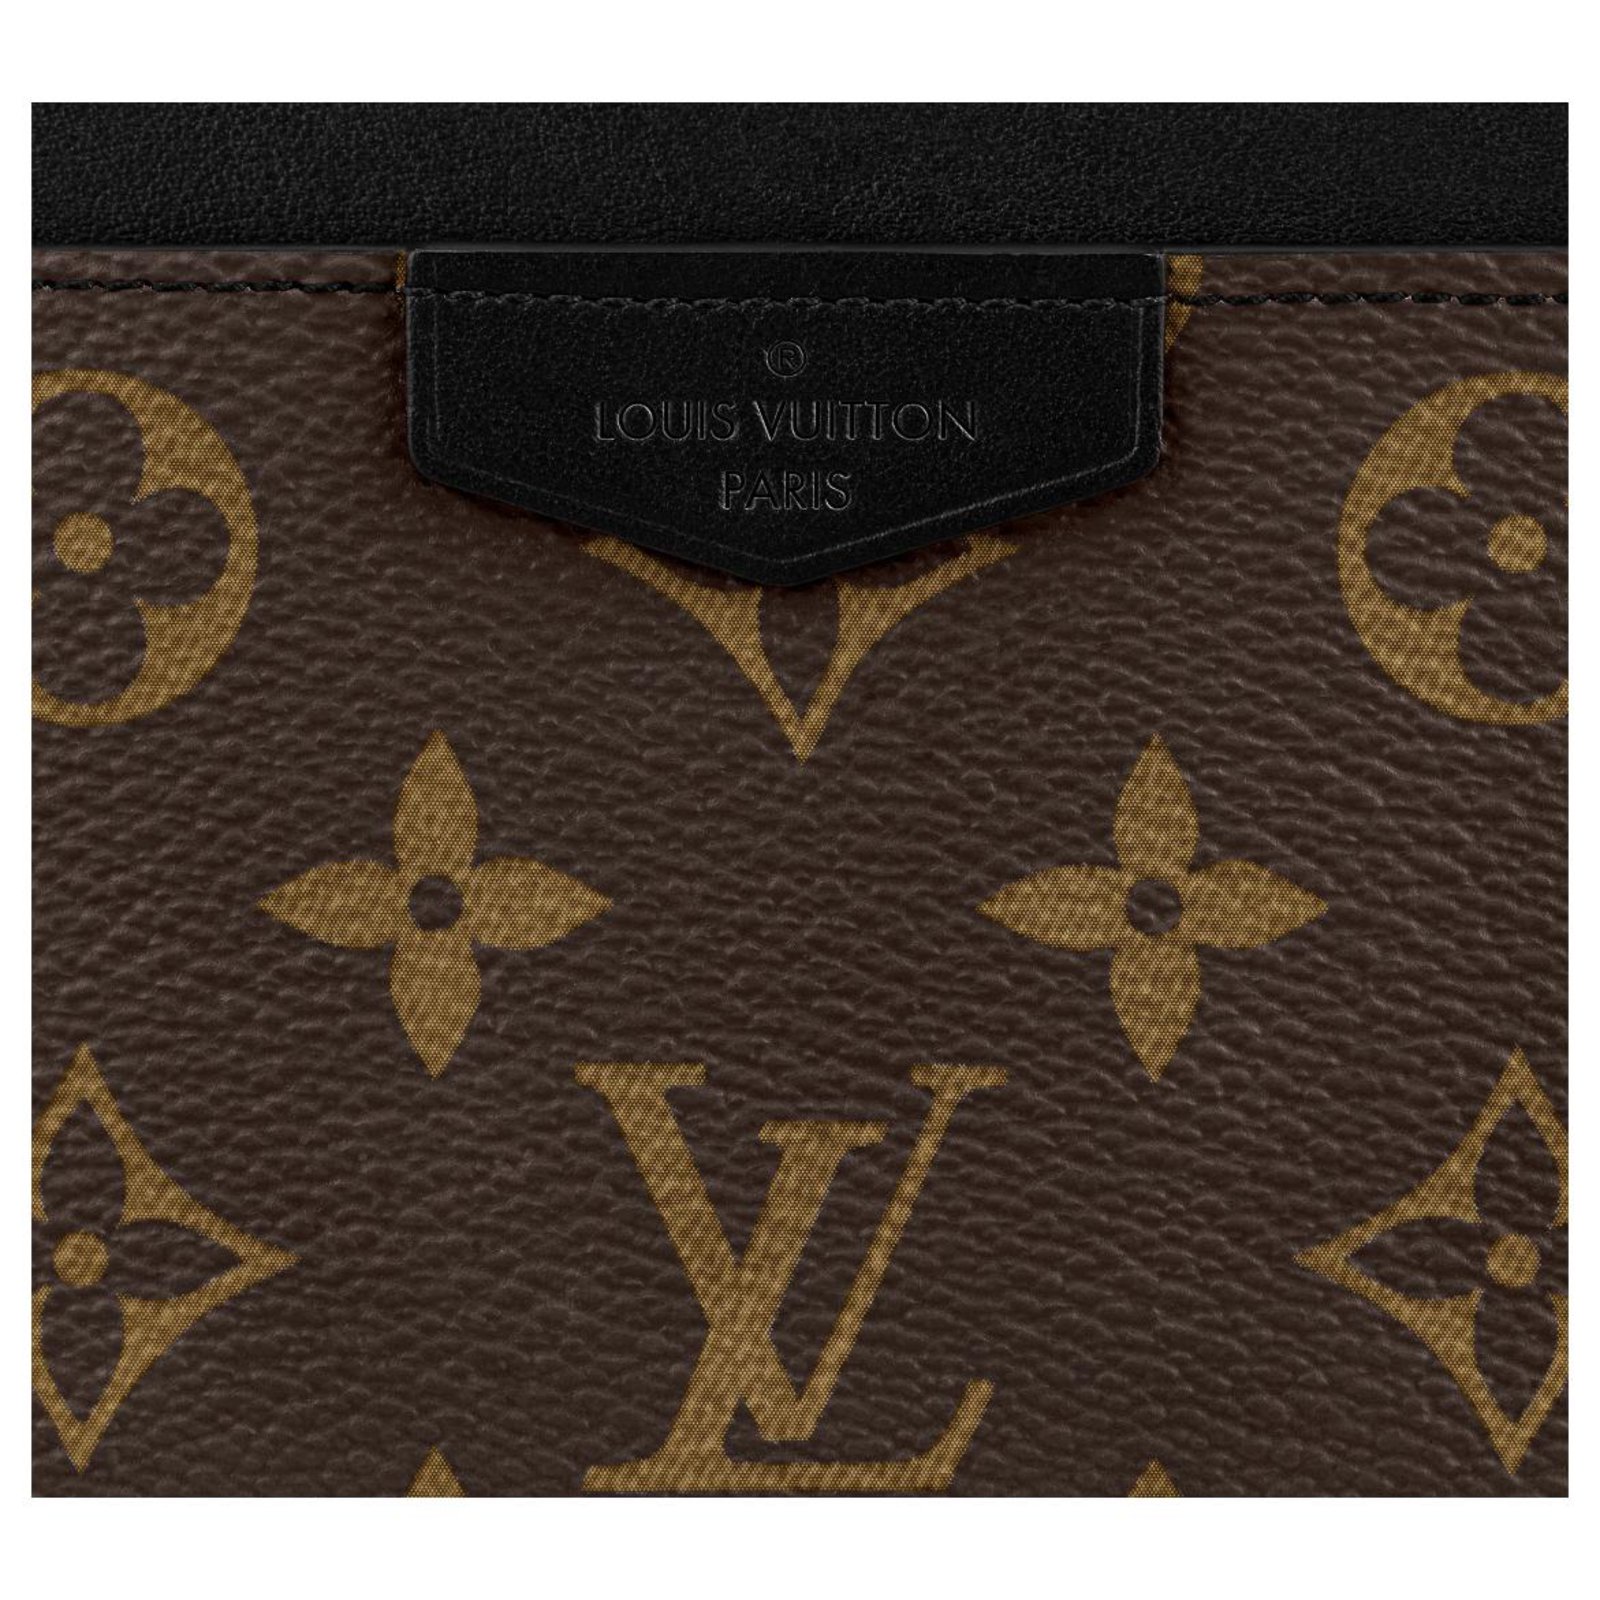 Wallets Small Accessories Louis Vuitton Louis Vuitton Fortune Cookie / Fortune Cookie Pendant Brown Cognac